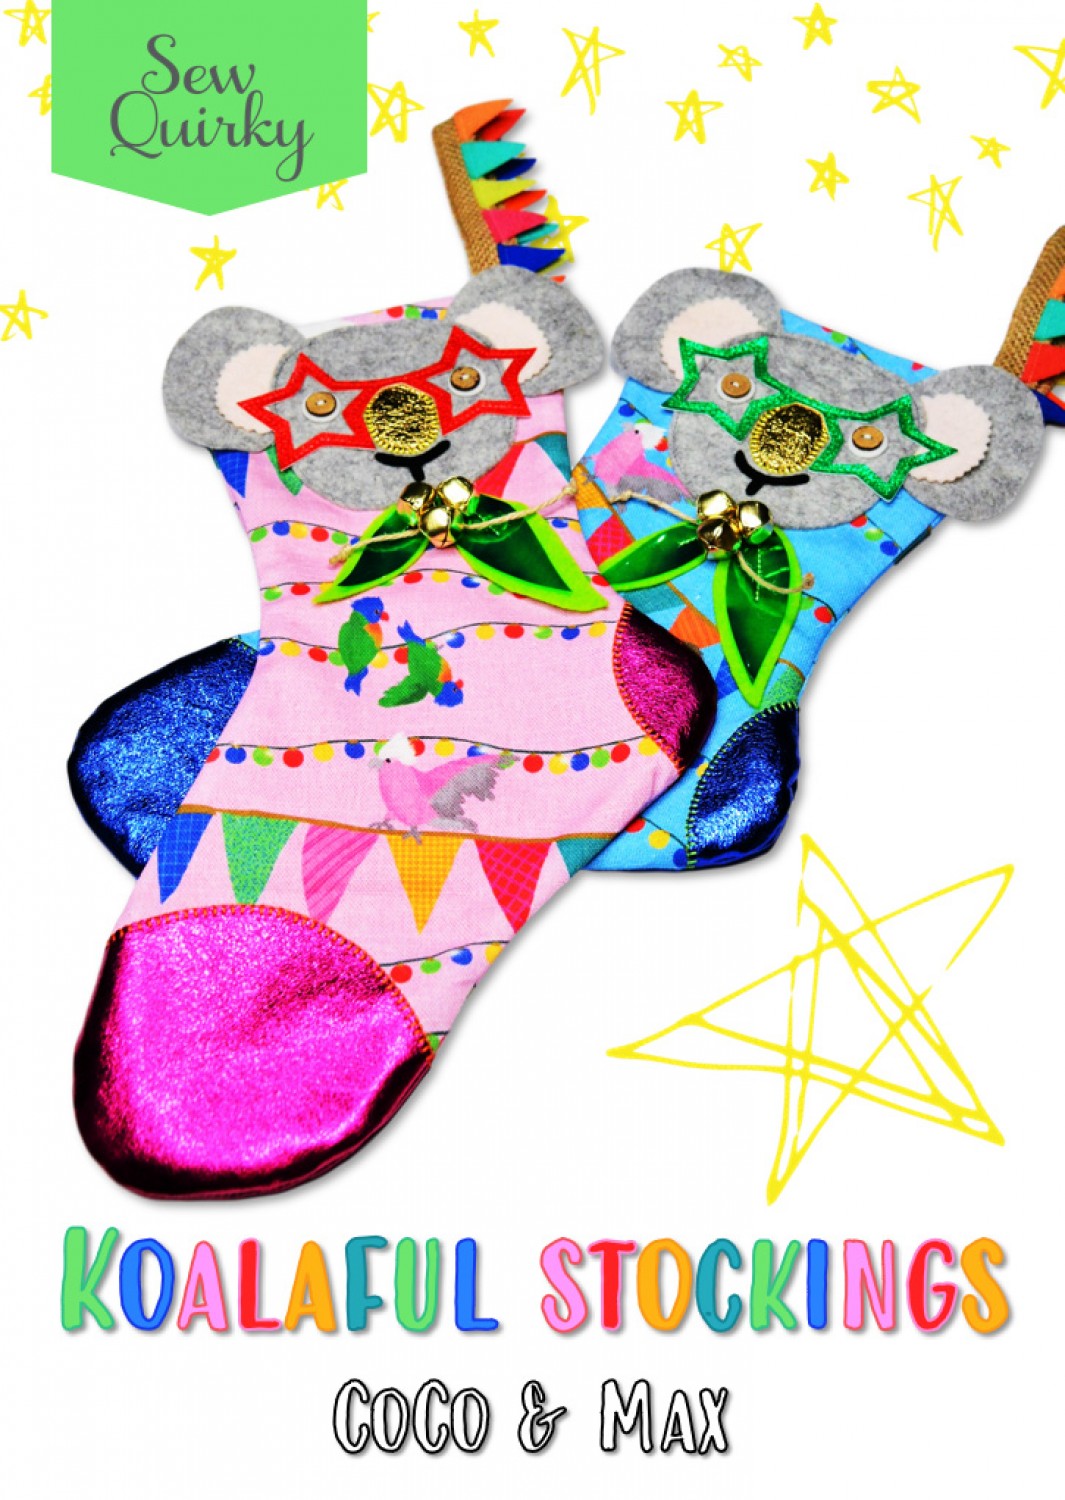 Koalaful Stockings